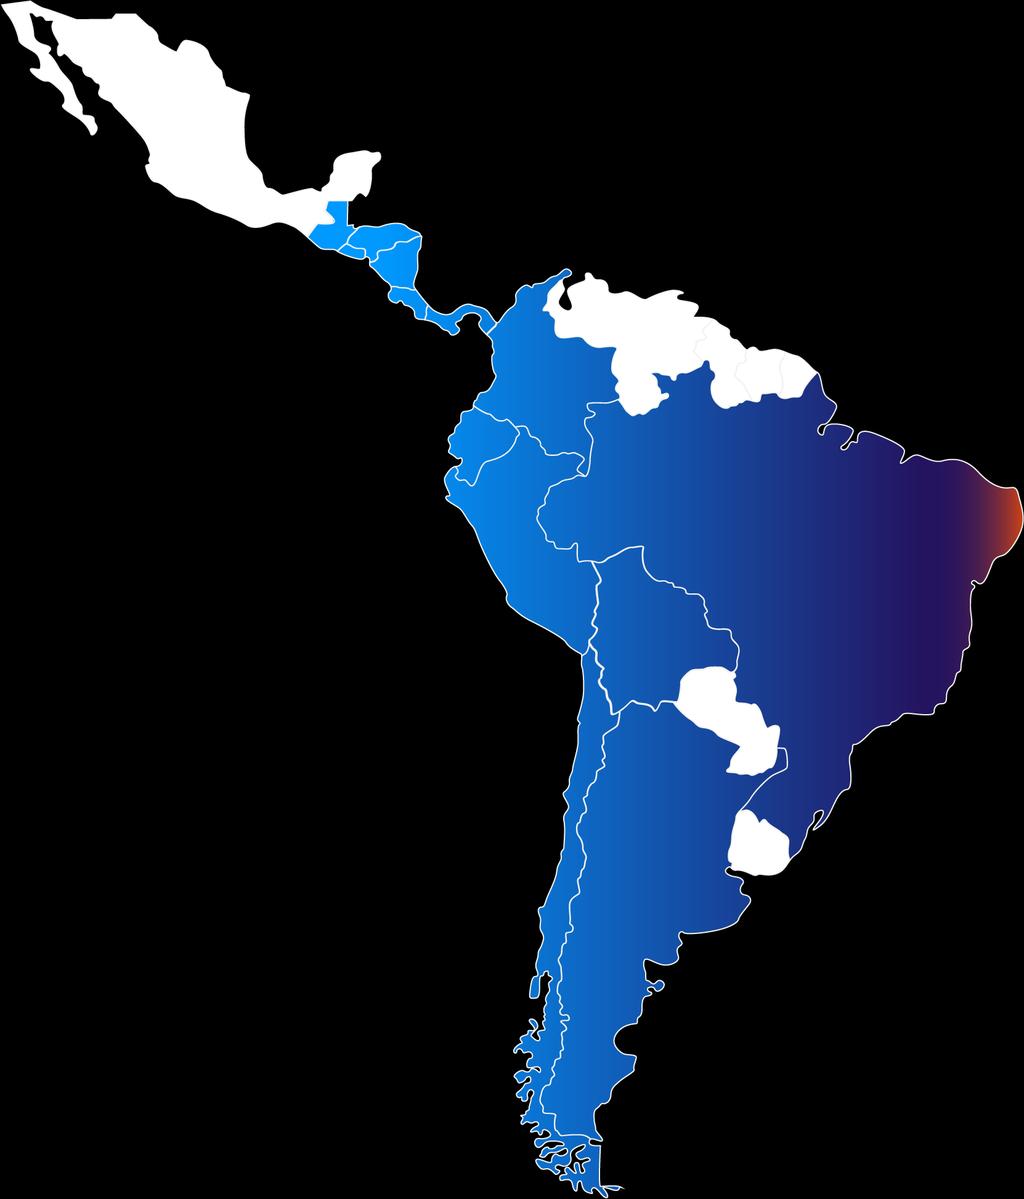 PRESENCIA EN LATINOAMÉRICA CENTROAMÉRICA COLOMBIA ISA BRASIL CTEEP COLOMBIA INTERCOLOMBIA IEMG TRANSELCA INTERNEXA PINHEIROS SERRA DO JAPI ECUADOR XM EVRECY Sistemas Inteligentes en Red INTERNEXA ISA